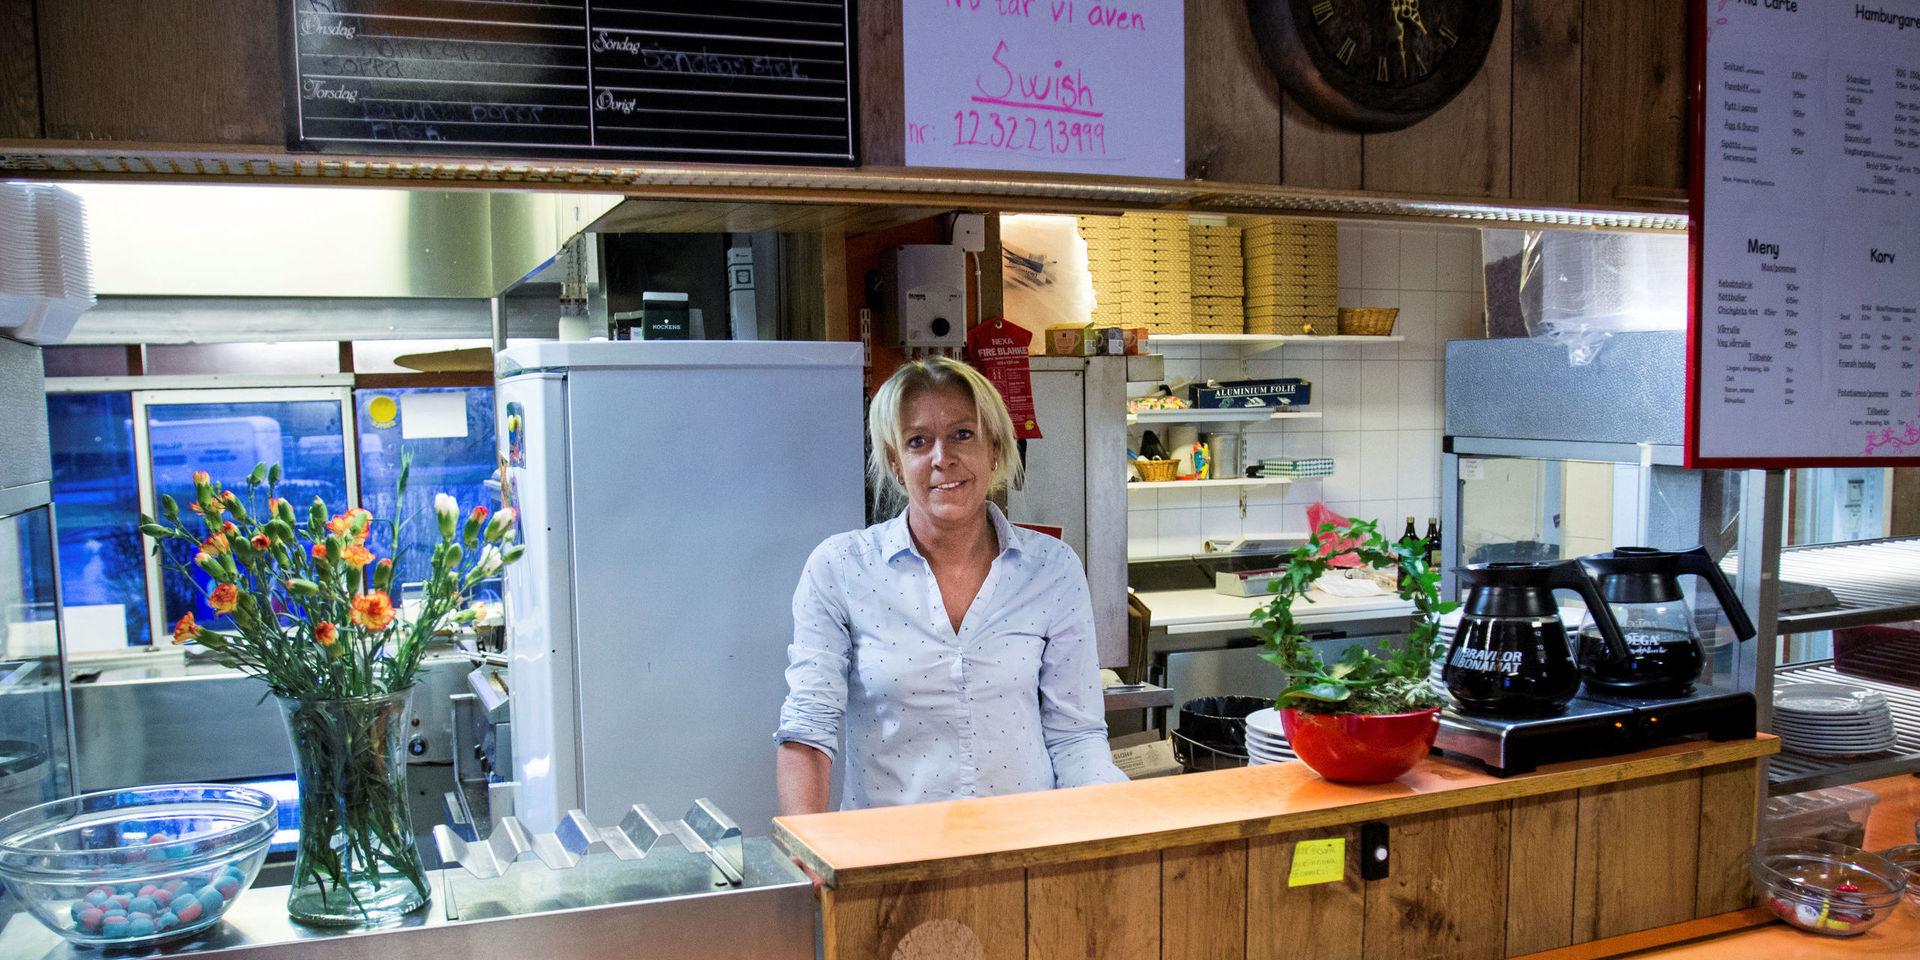 I en intervju med HP i början av året skyllde Tajes ägare Pernilla Petersson en del av grillkökets problem på att hon haft otur med personalen. ”Personalen i dag är väl inte den lojala, drivna typen och det finns ingen arbetsmoral”, sade hon.